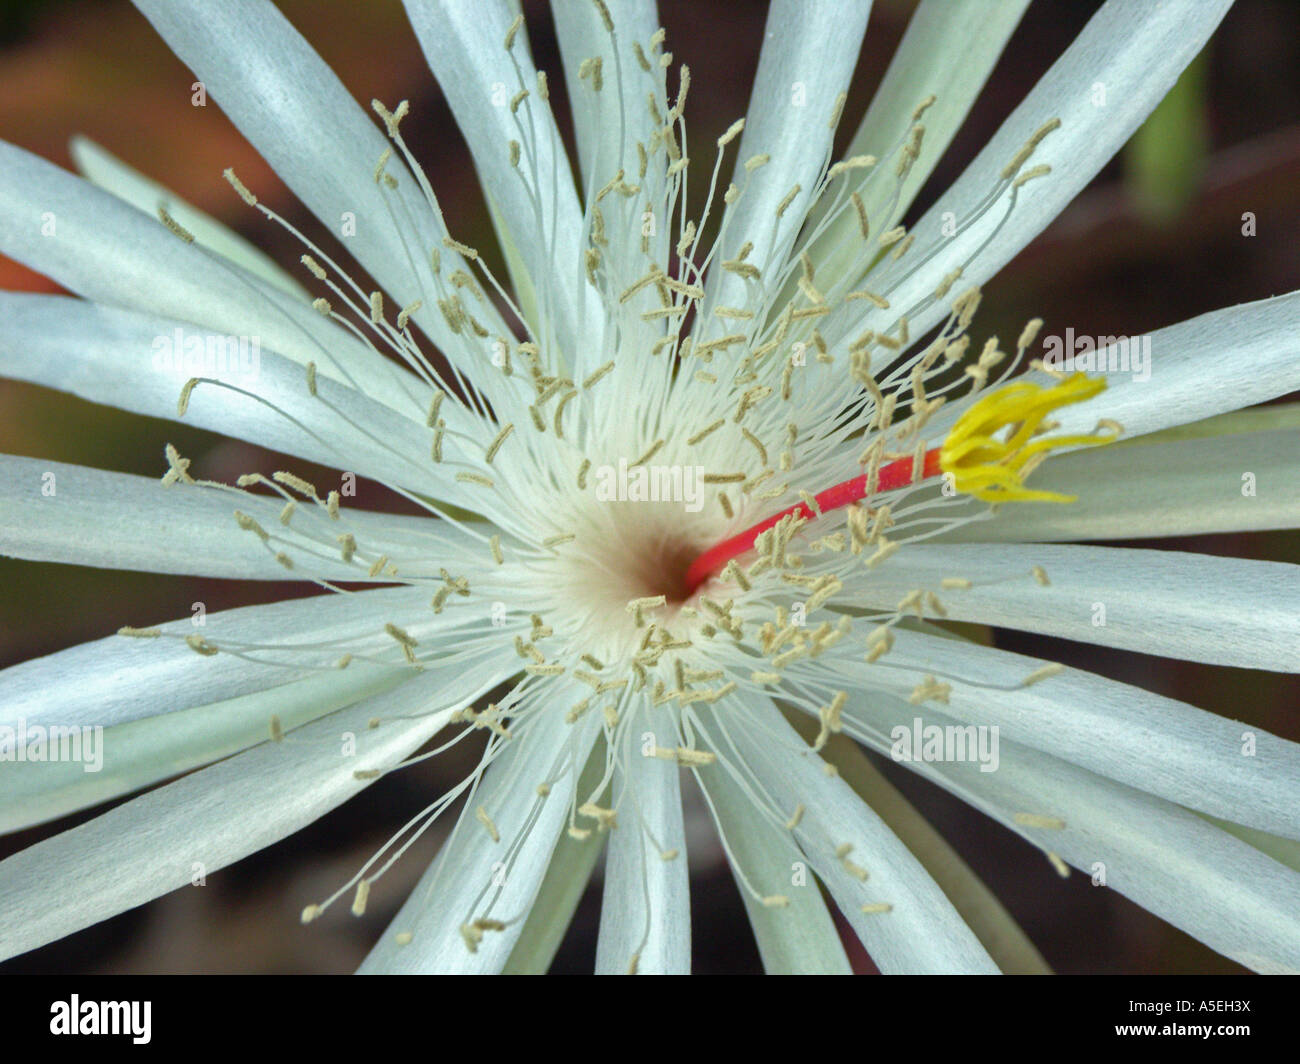 Closeup shot of white flower of epiphyllum cactus Stock Photo